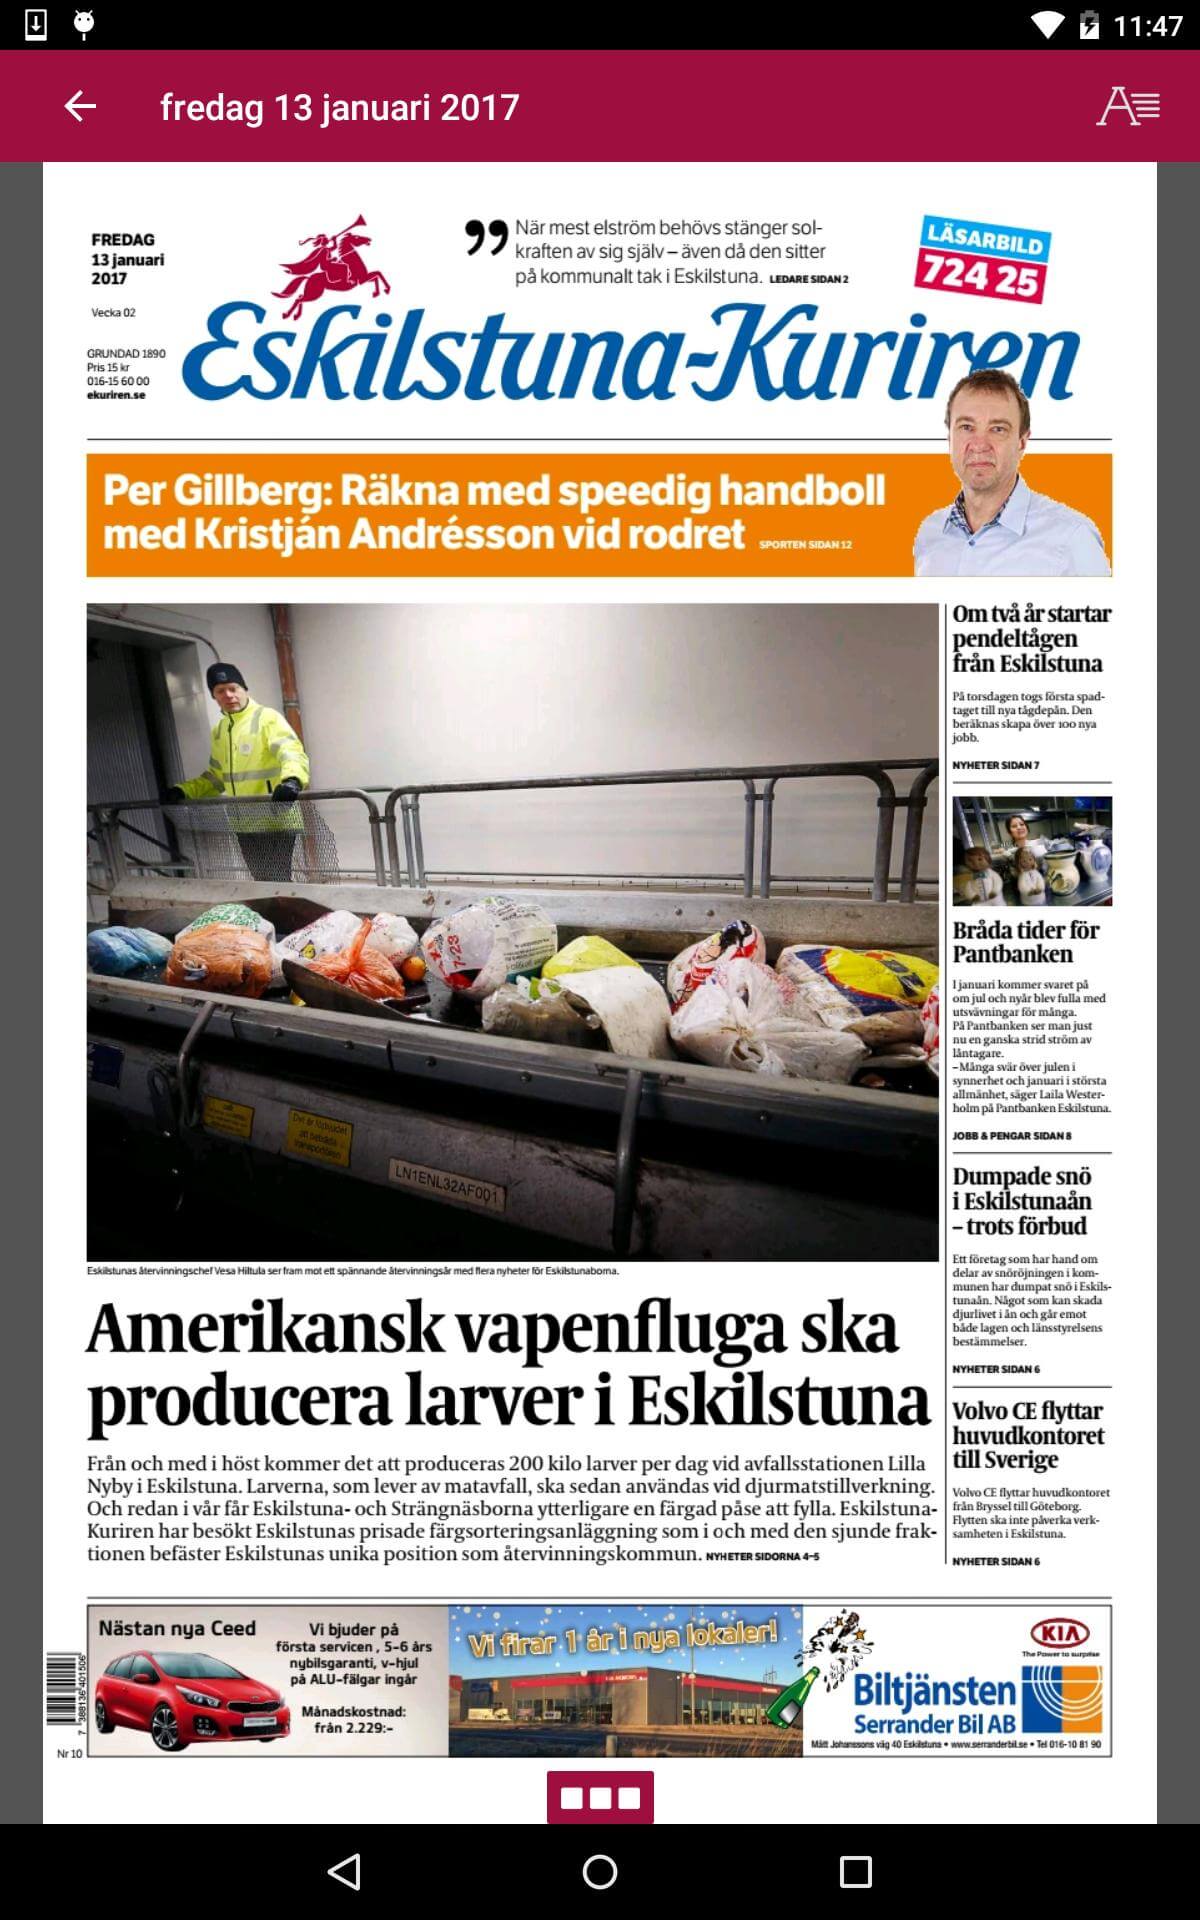 Sweden 31 Eskilstunakuriren med Strängnäs tidning